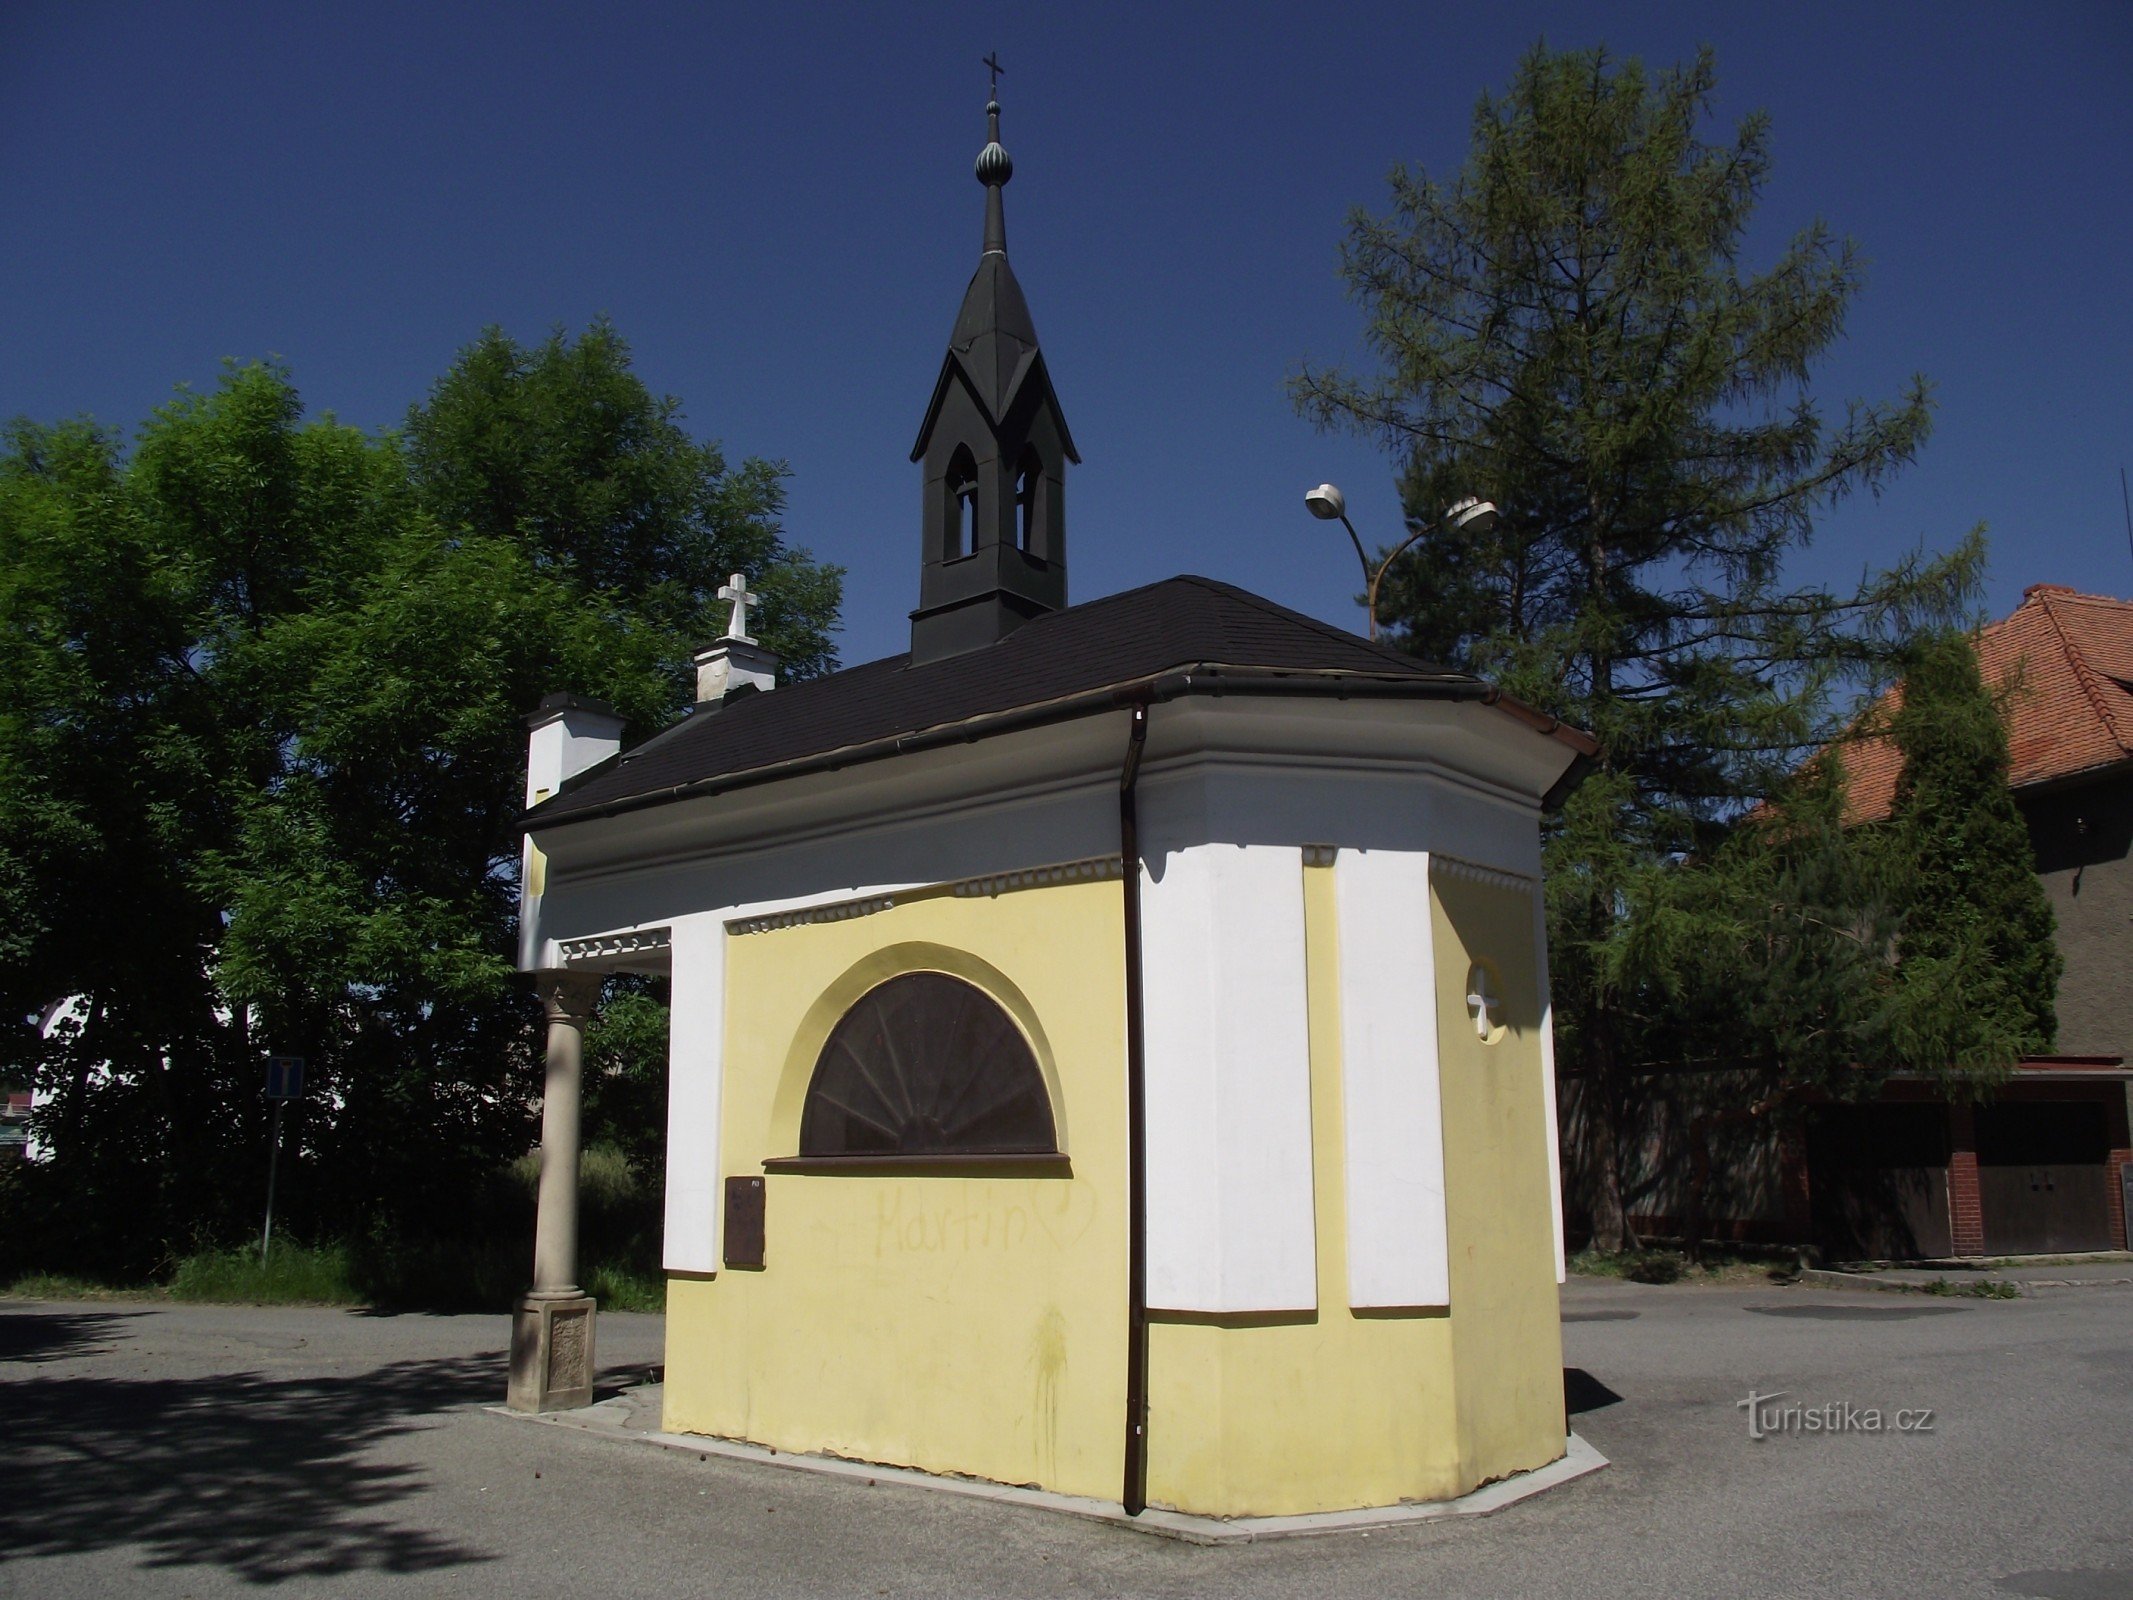 Valašské Meziříčí (Krásno) – capela Sf. Rocha